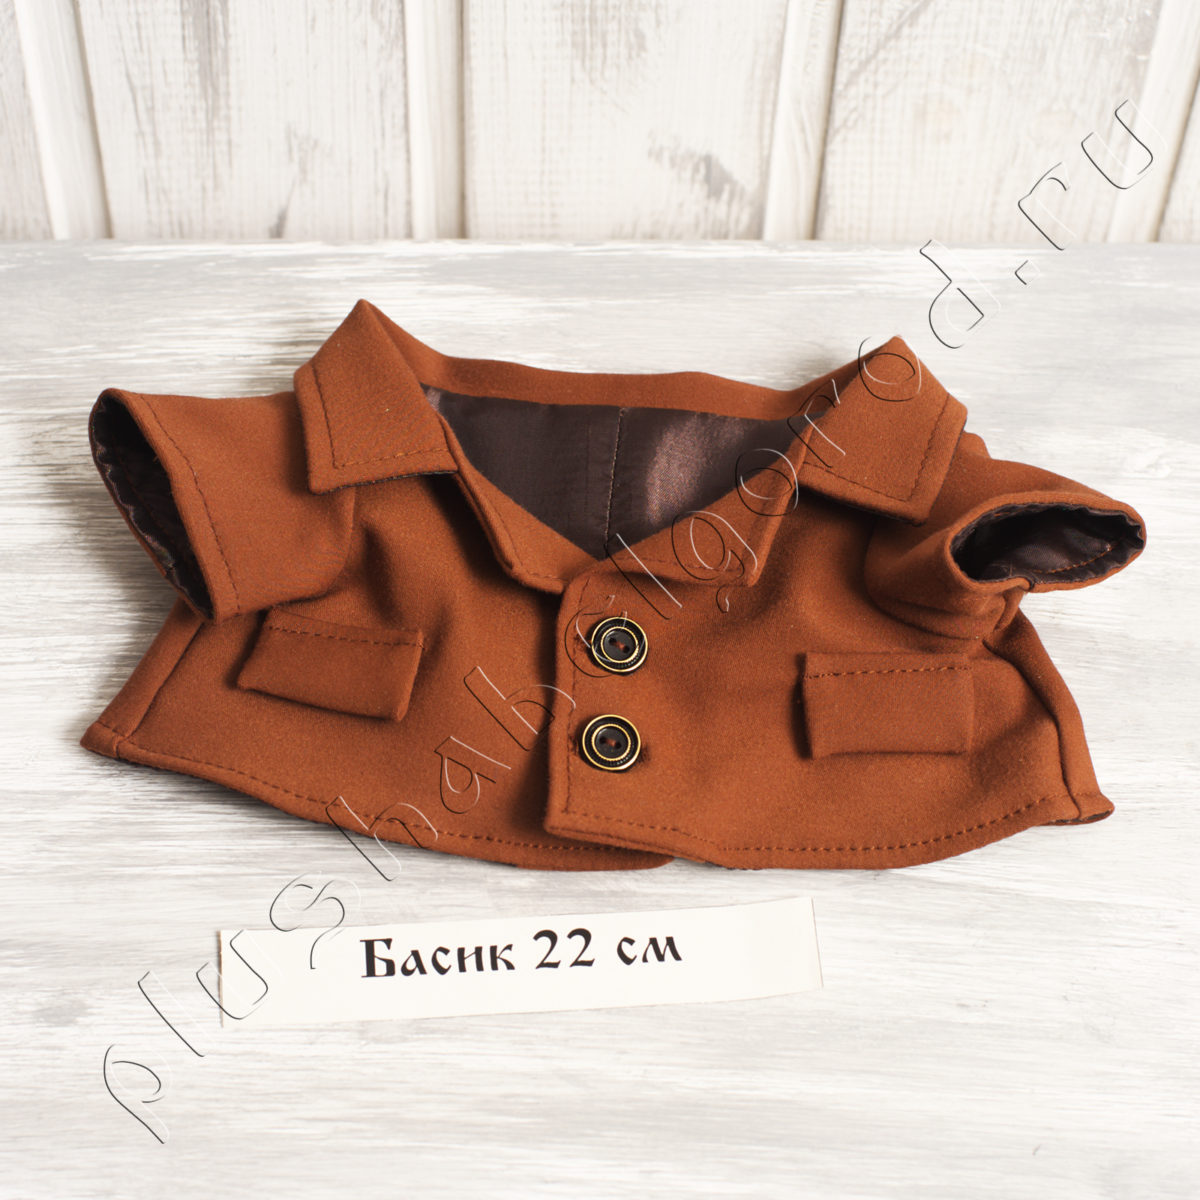 Пиджак коричневый на подкладке (22)